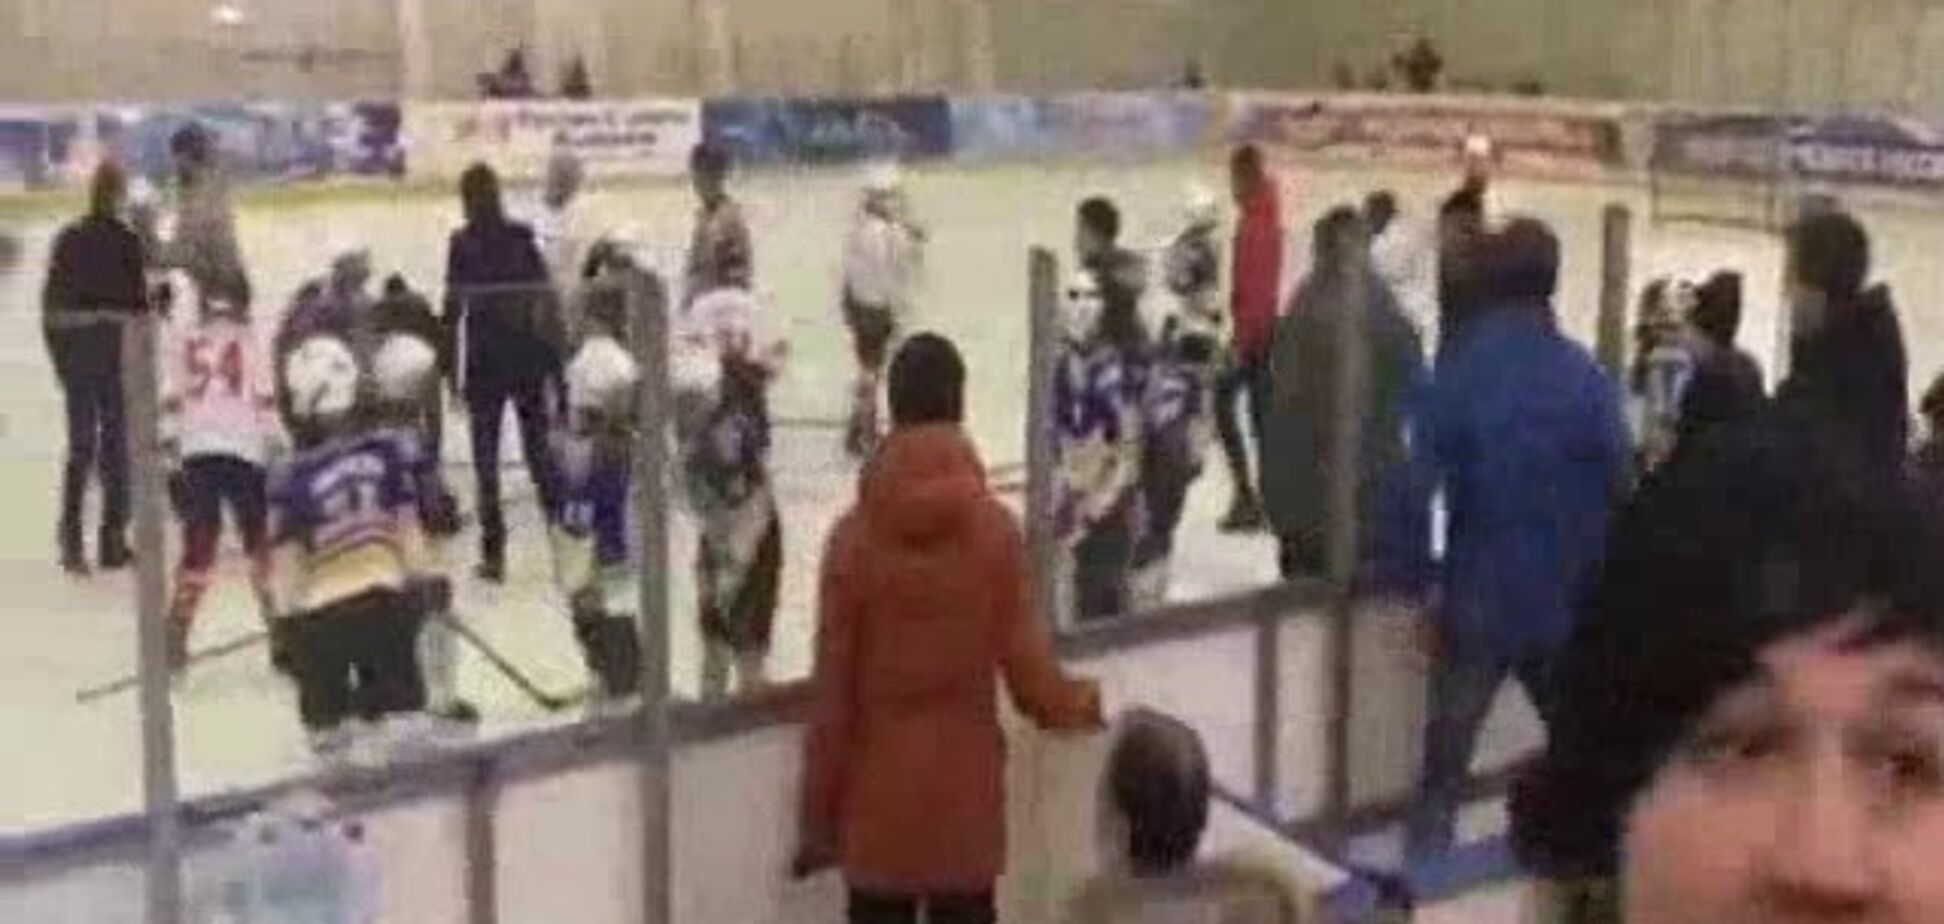 Наймолодшому 9 років: у Росії хокеїсти влаштували люту бійку на льоду - опубліковано відео